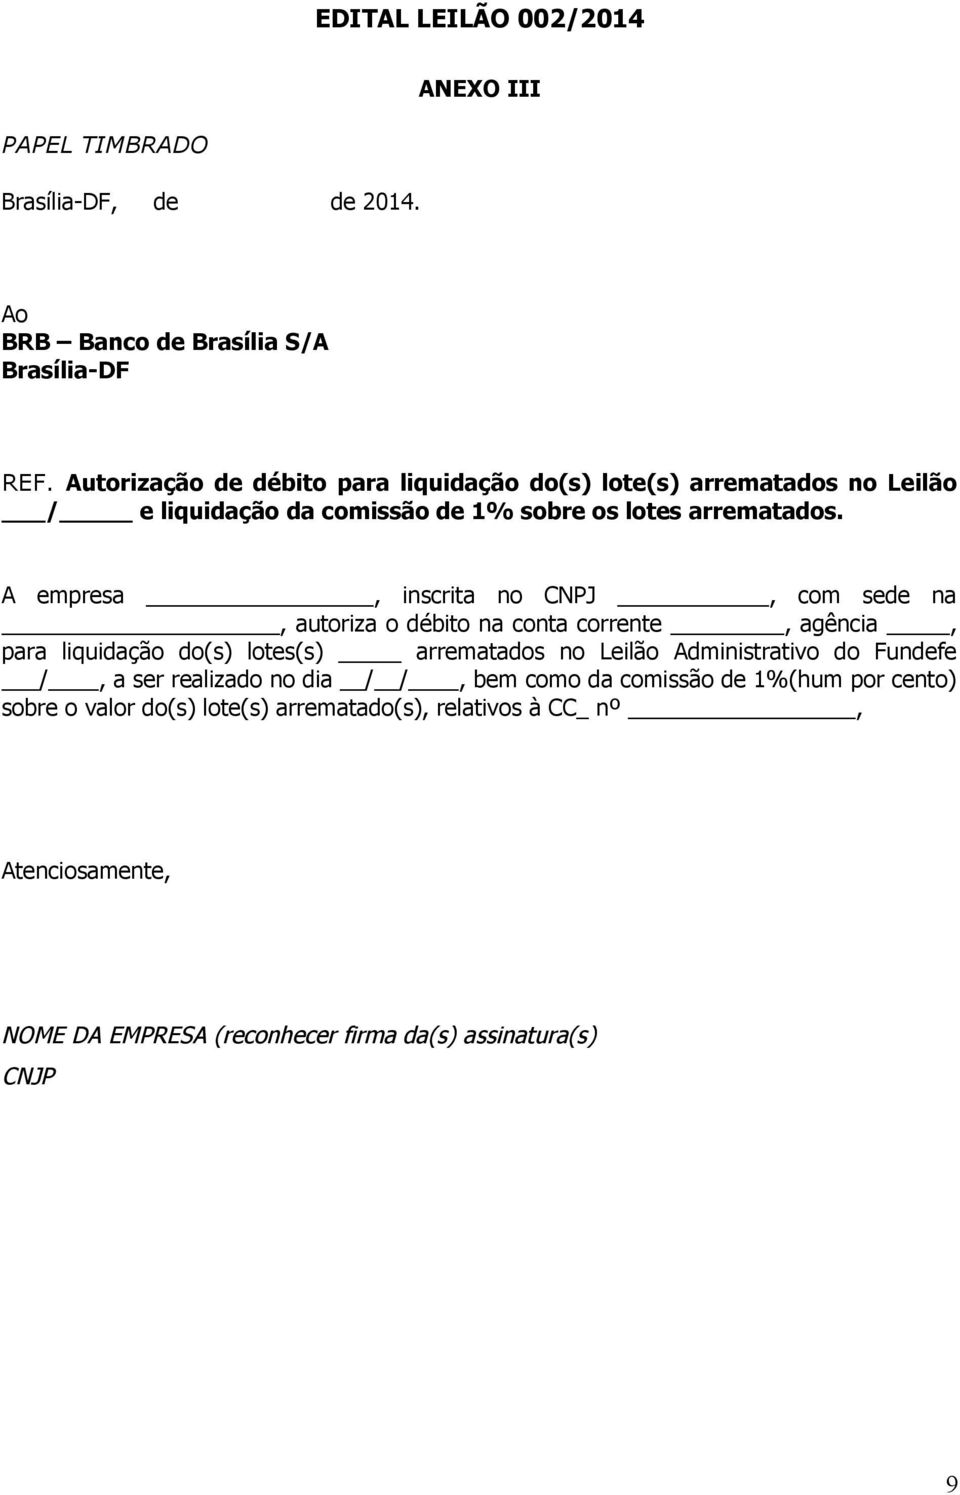 A empresa, inscrita no CNPJ, com sede na, autoriza o débito na conta corrente, agência, para liquidação do(s) lotes(s) arrematados no Leilão